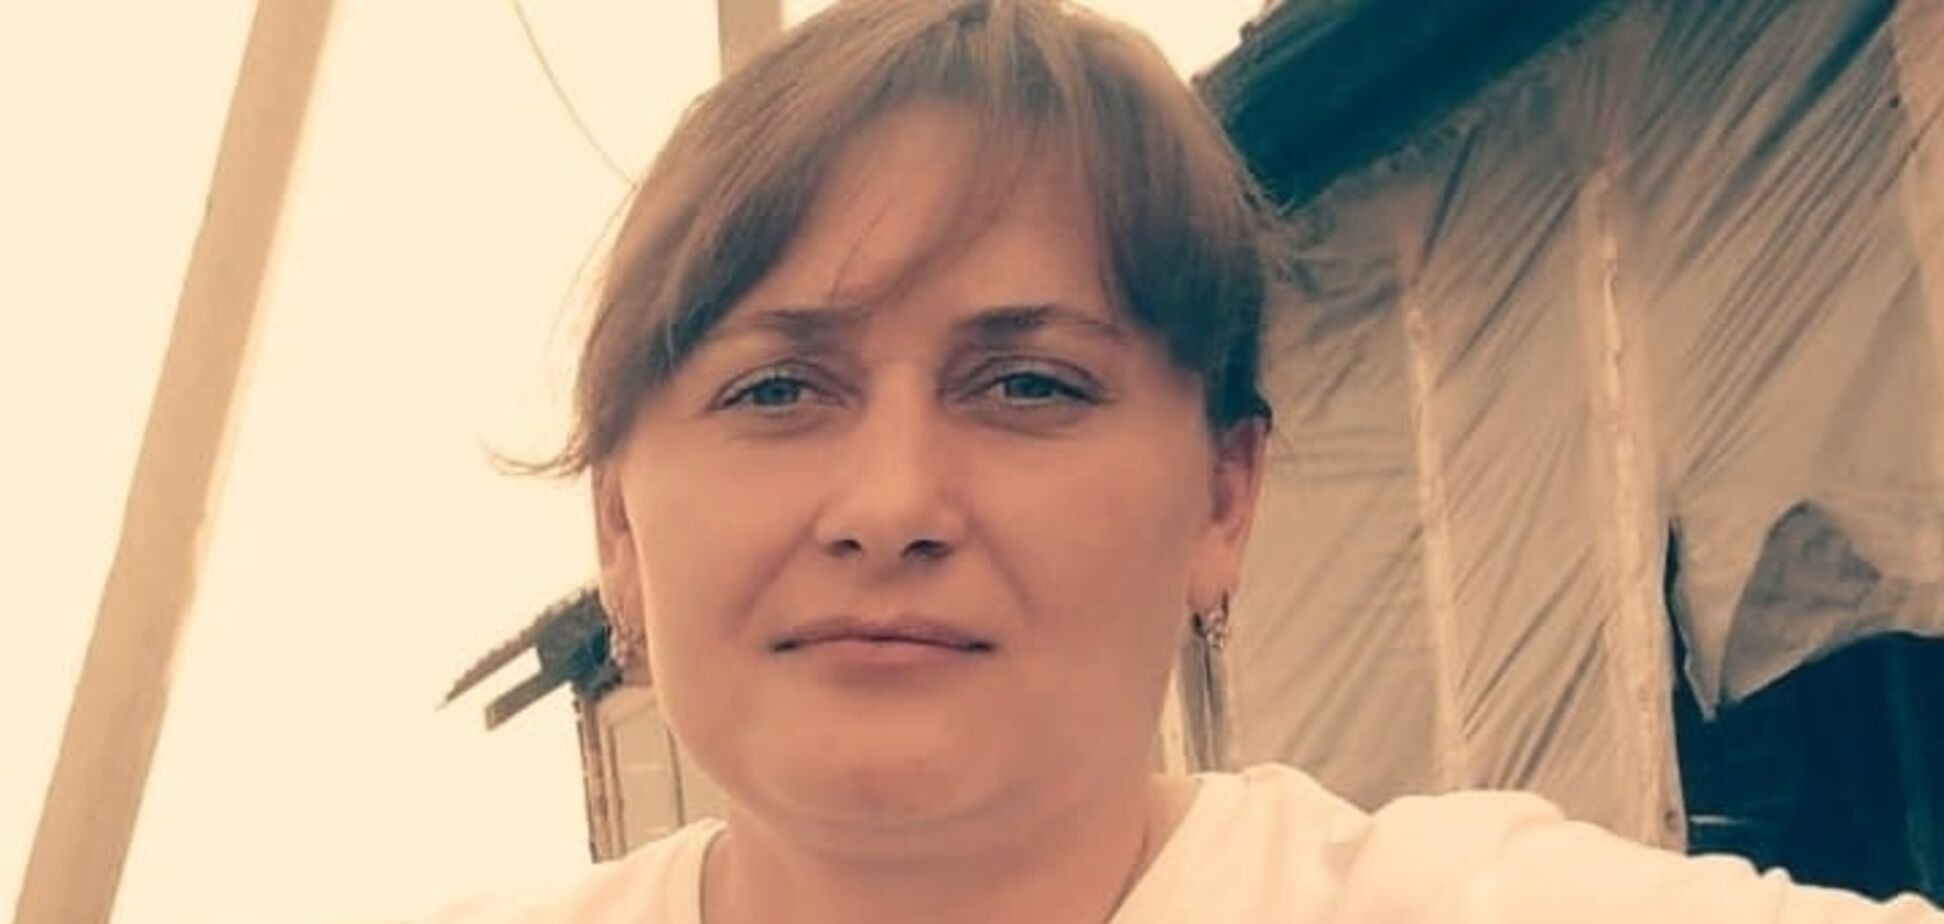 Снайпер видел женщину, но нажал на курок: появились детали смерти защитницы Украины